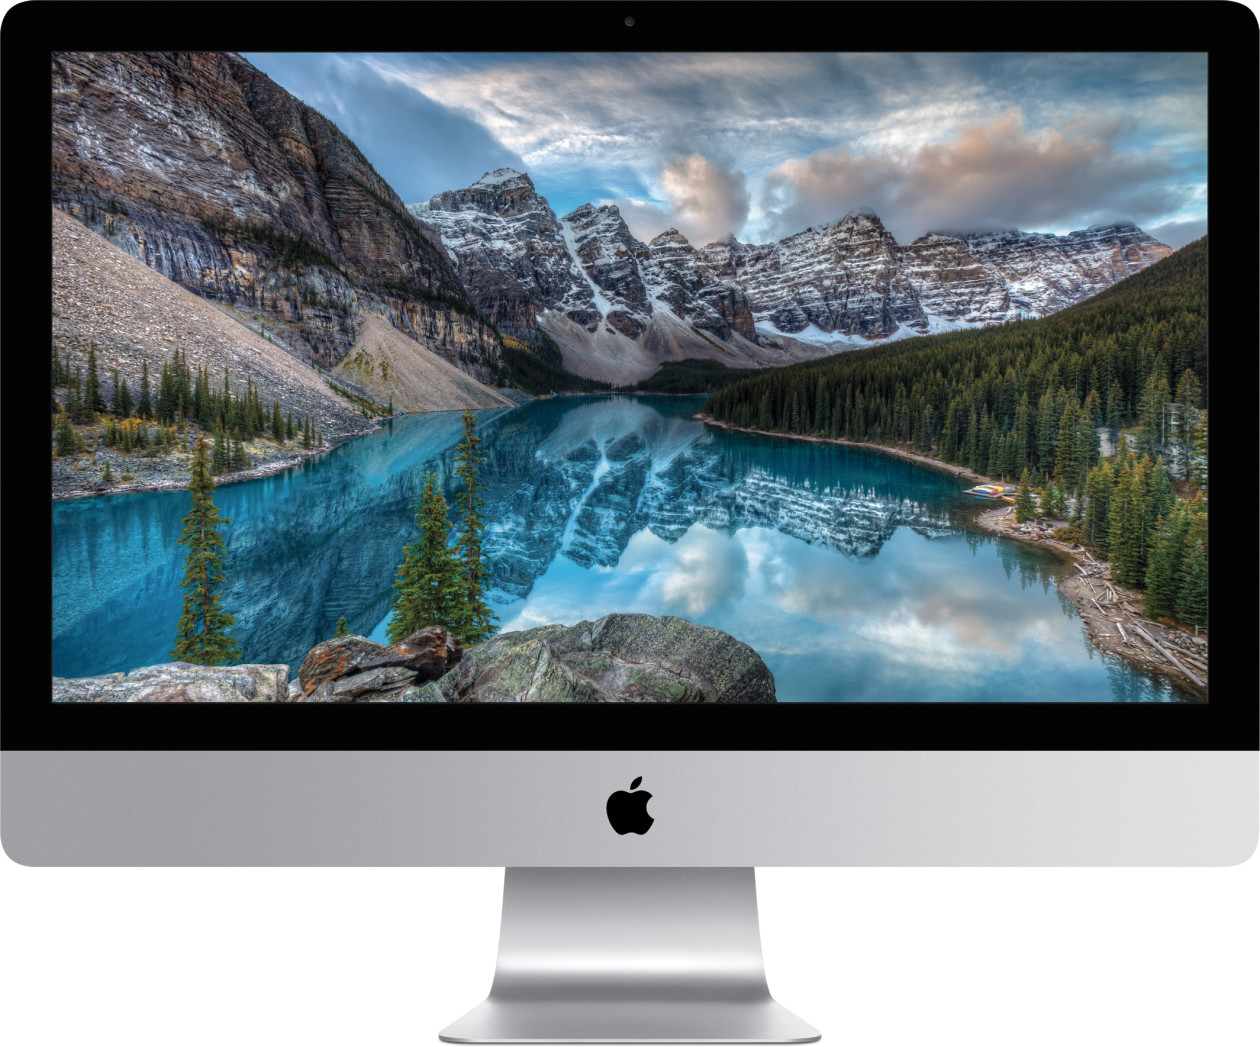 OS X El Capitan Enables 10-Bit Color Support on Retina Display iMacs